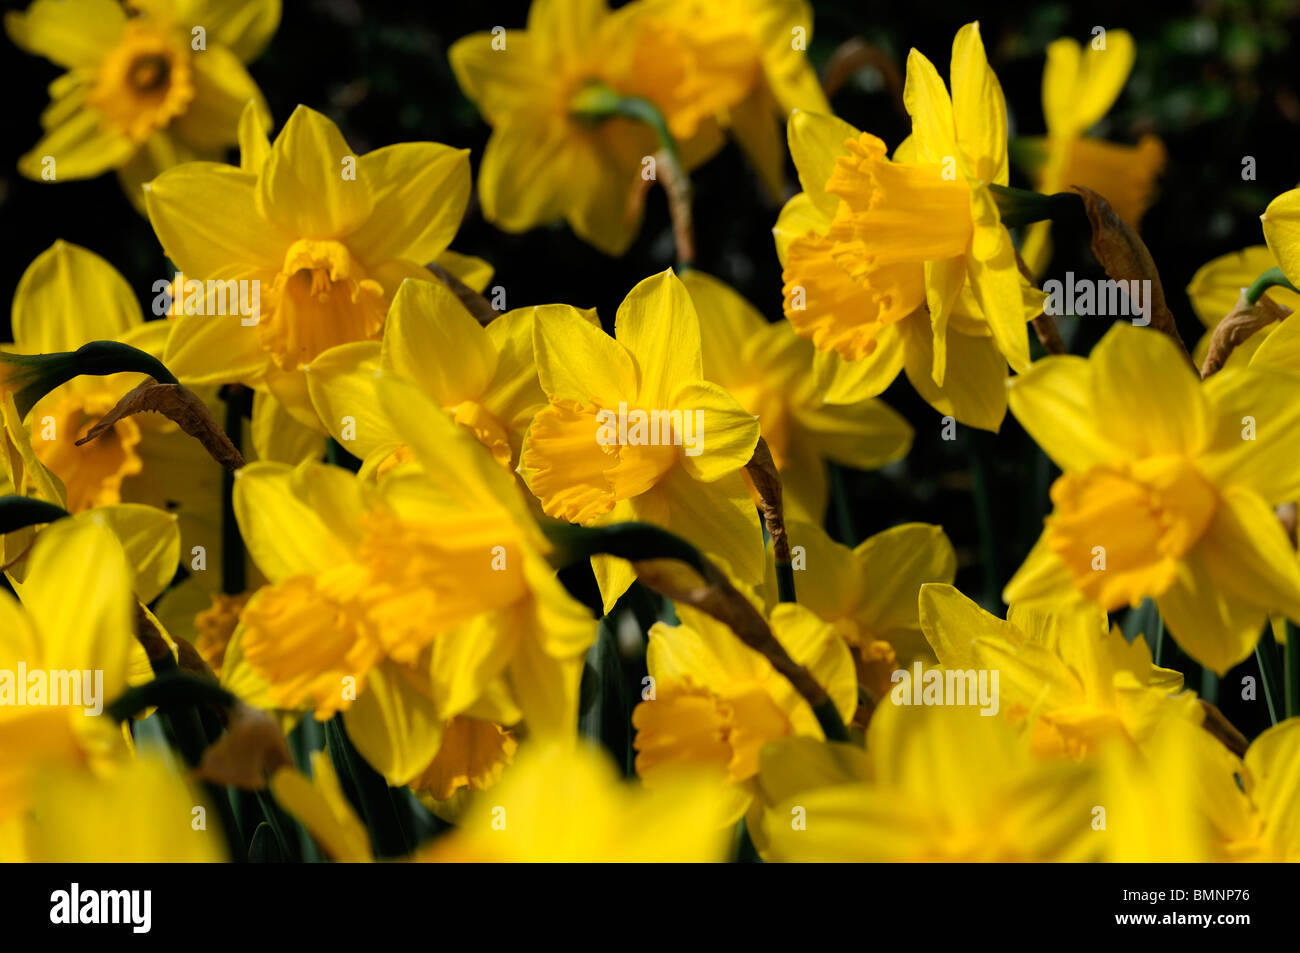 Narcissus carlton Daffodil divisione 2 fioritura precoce foto macro Close up fiore fiore giallo fiore cup Foto Stock